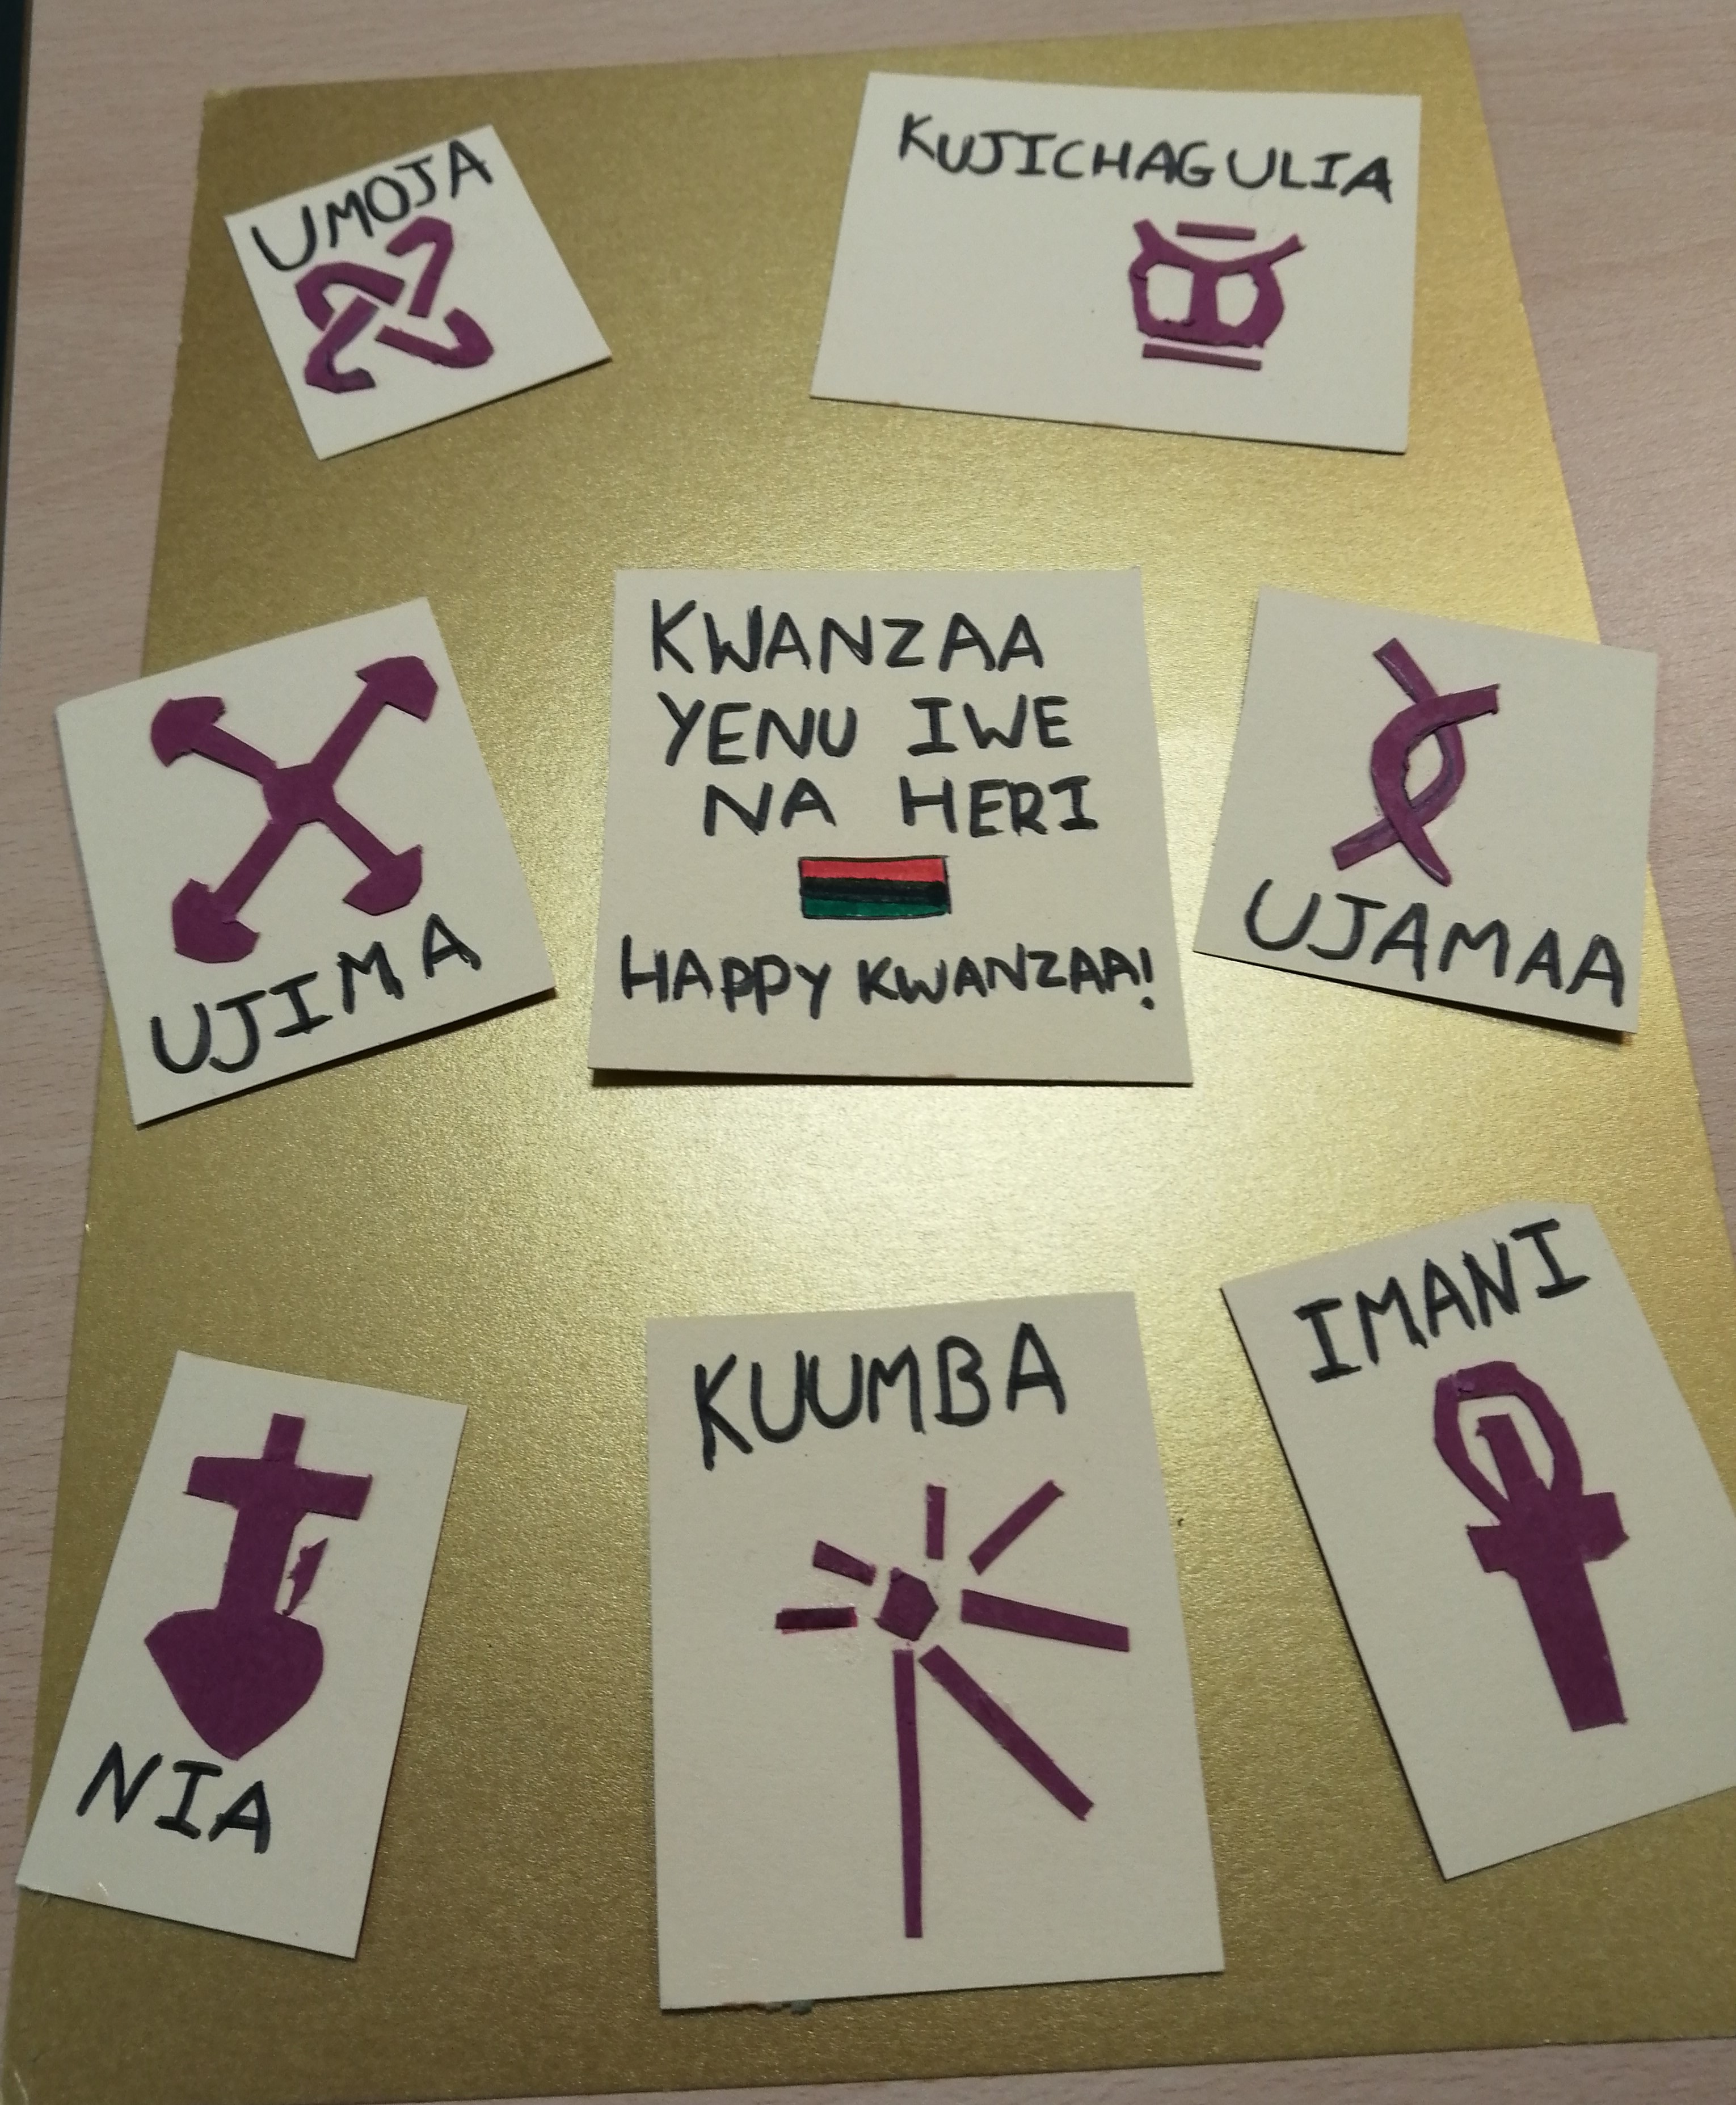 The names and symbols of the 7 principles of Kwanzaa arranged around the words Kwanzaa yenu iwe na heri Happy Kawanzaa!